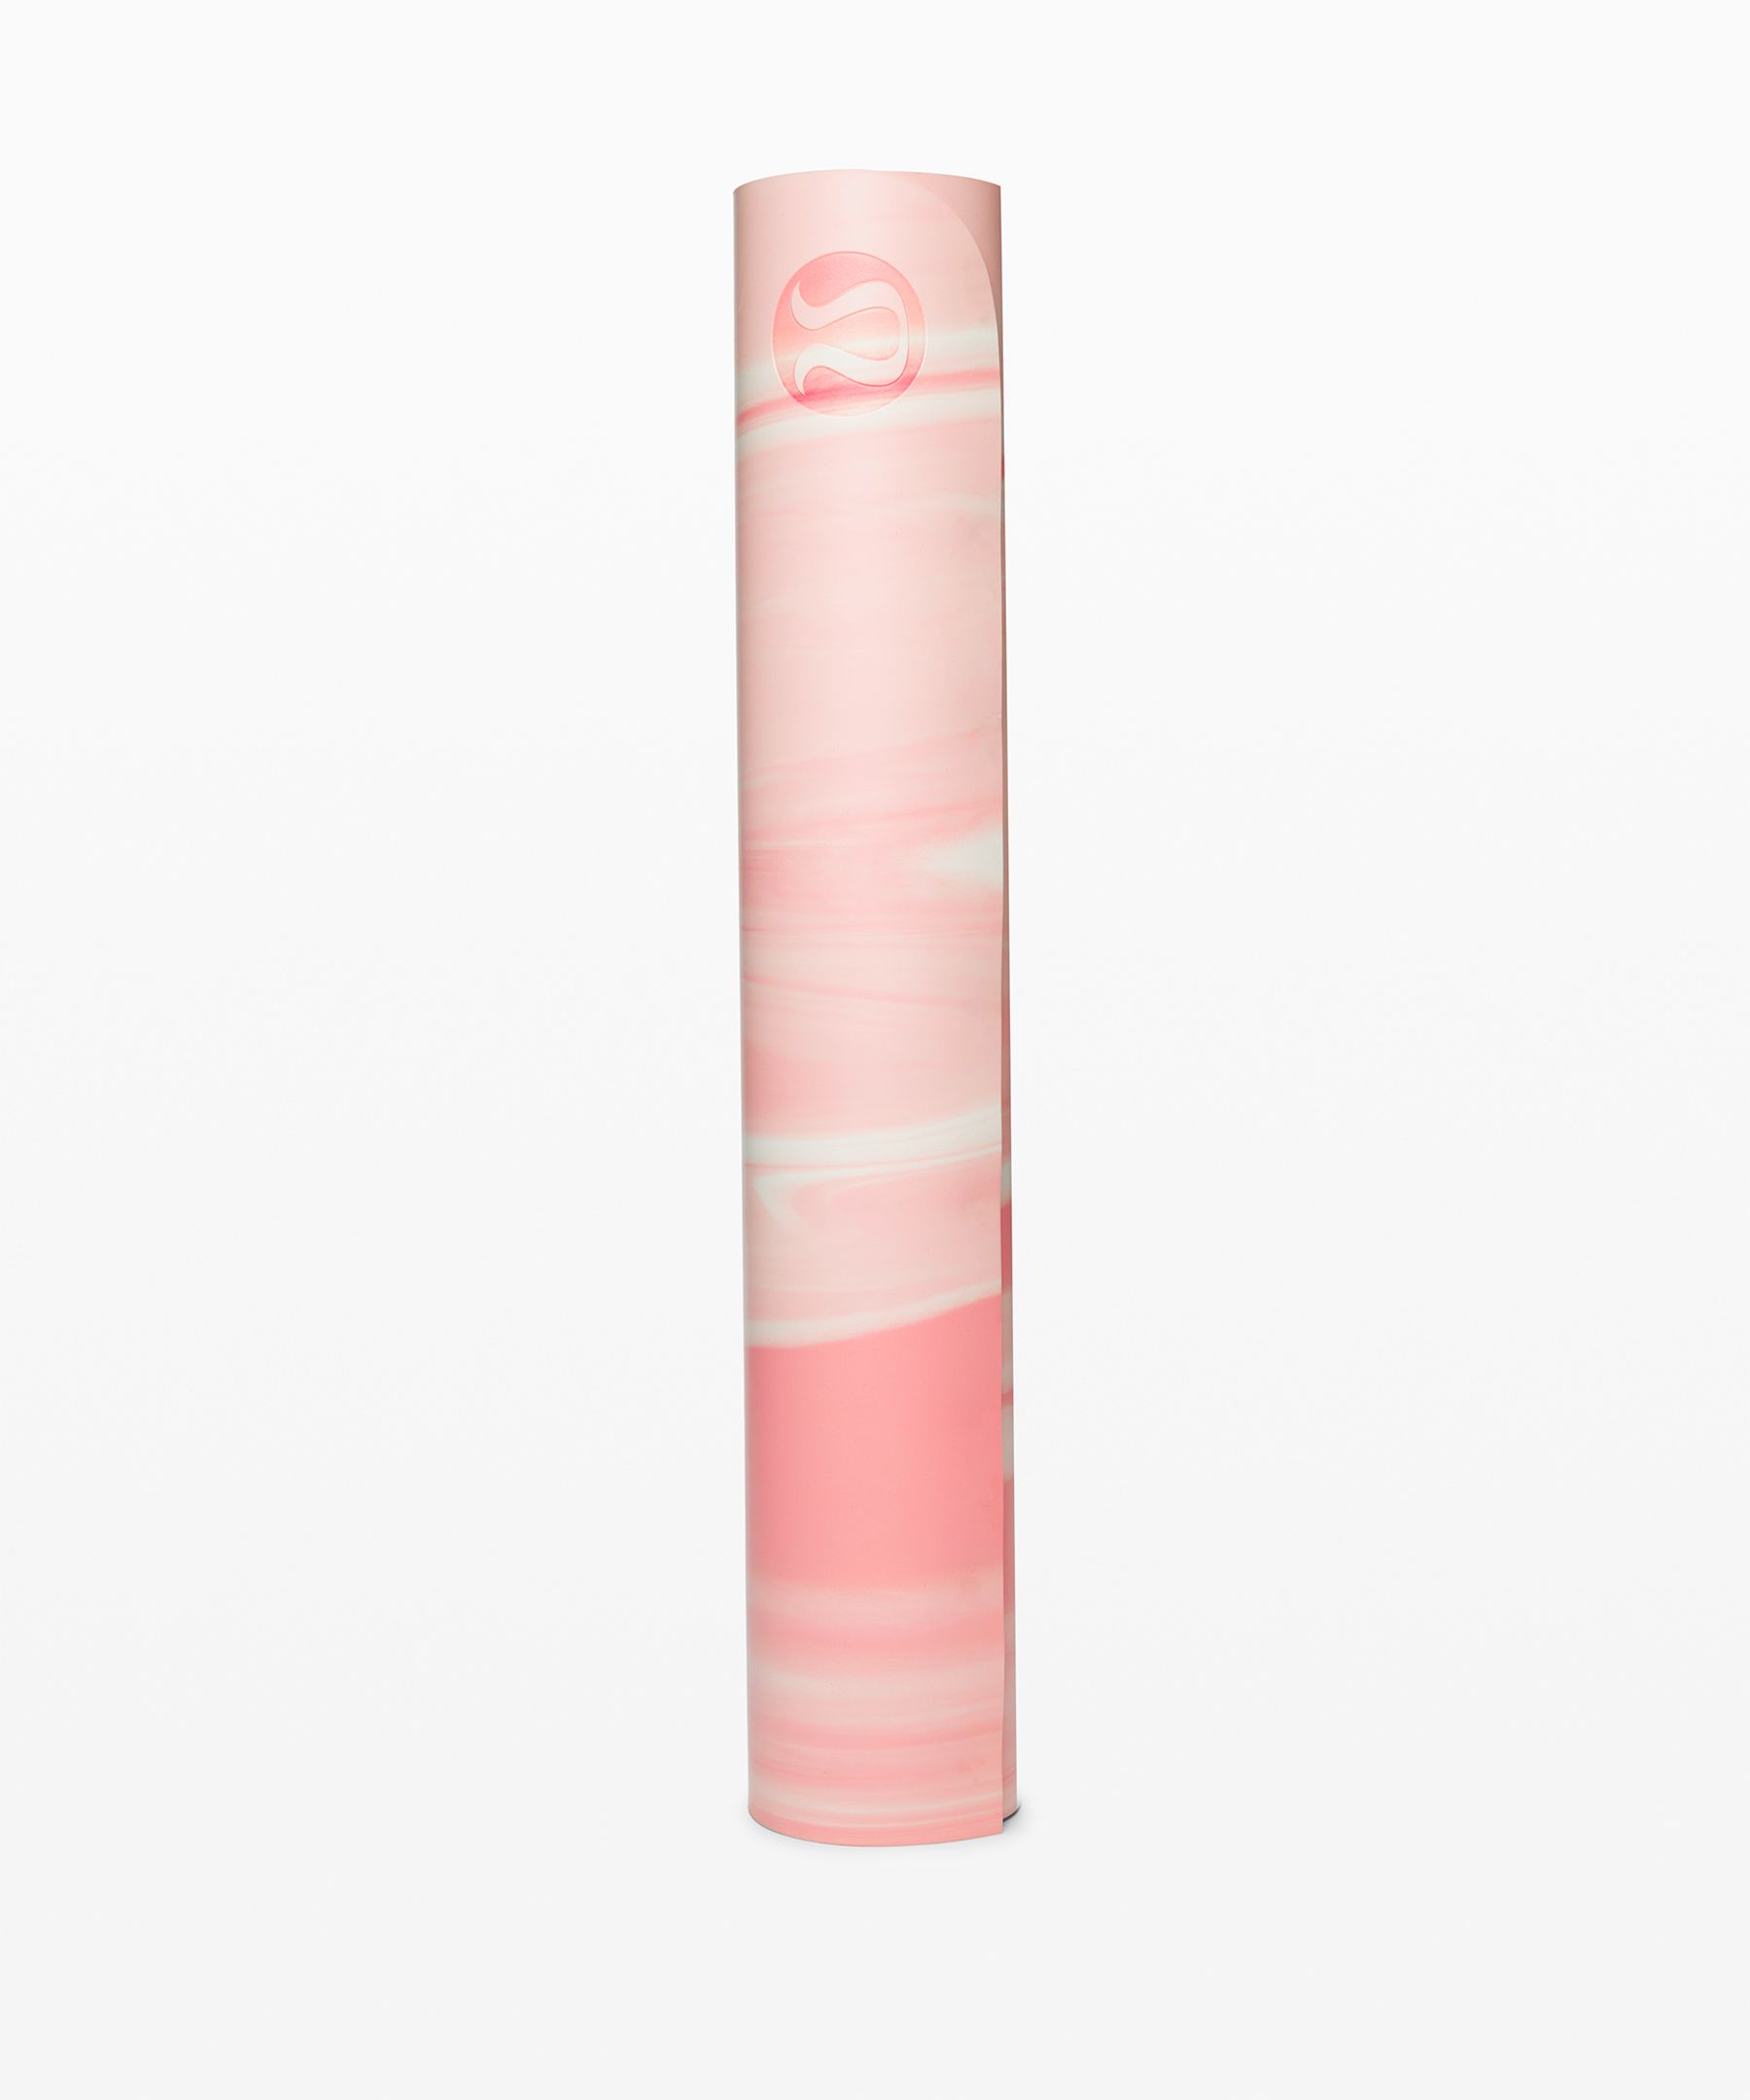 Lululemon Arise Mat *5mm In Azalea Pink/white/azalea Pink | ModeSens